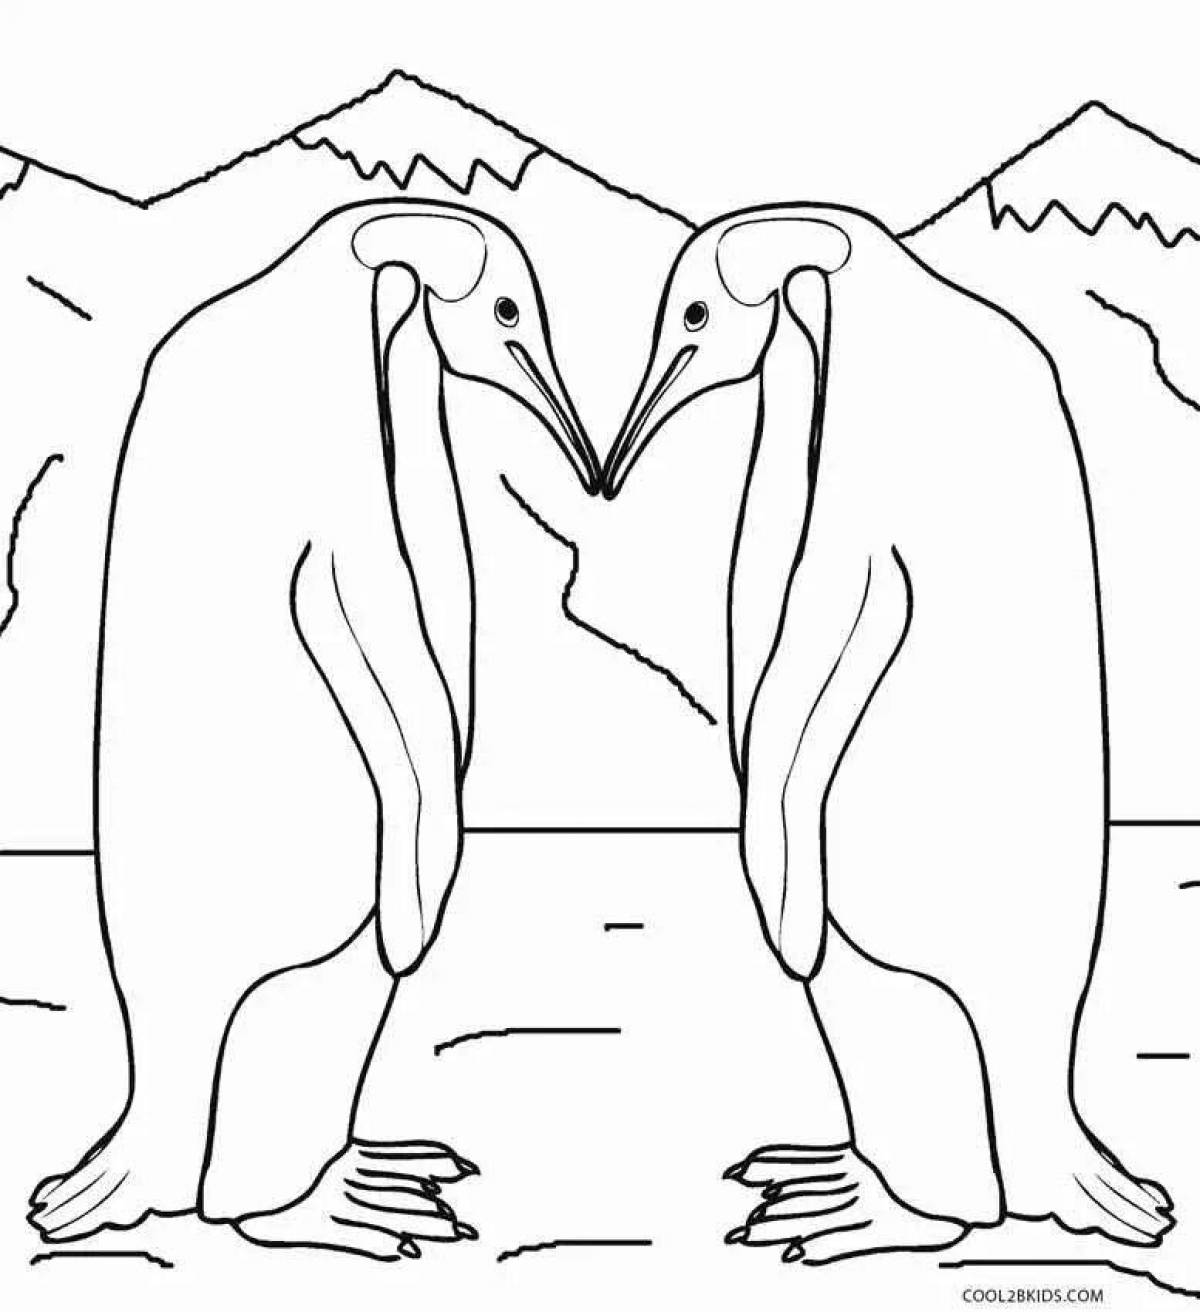 Красочная страница раскраски императорских пингвинов